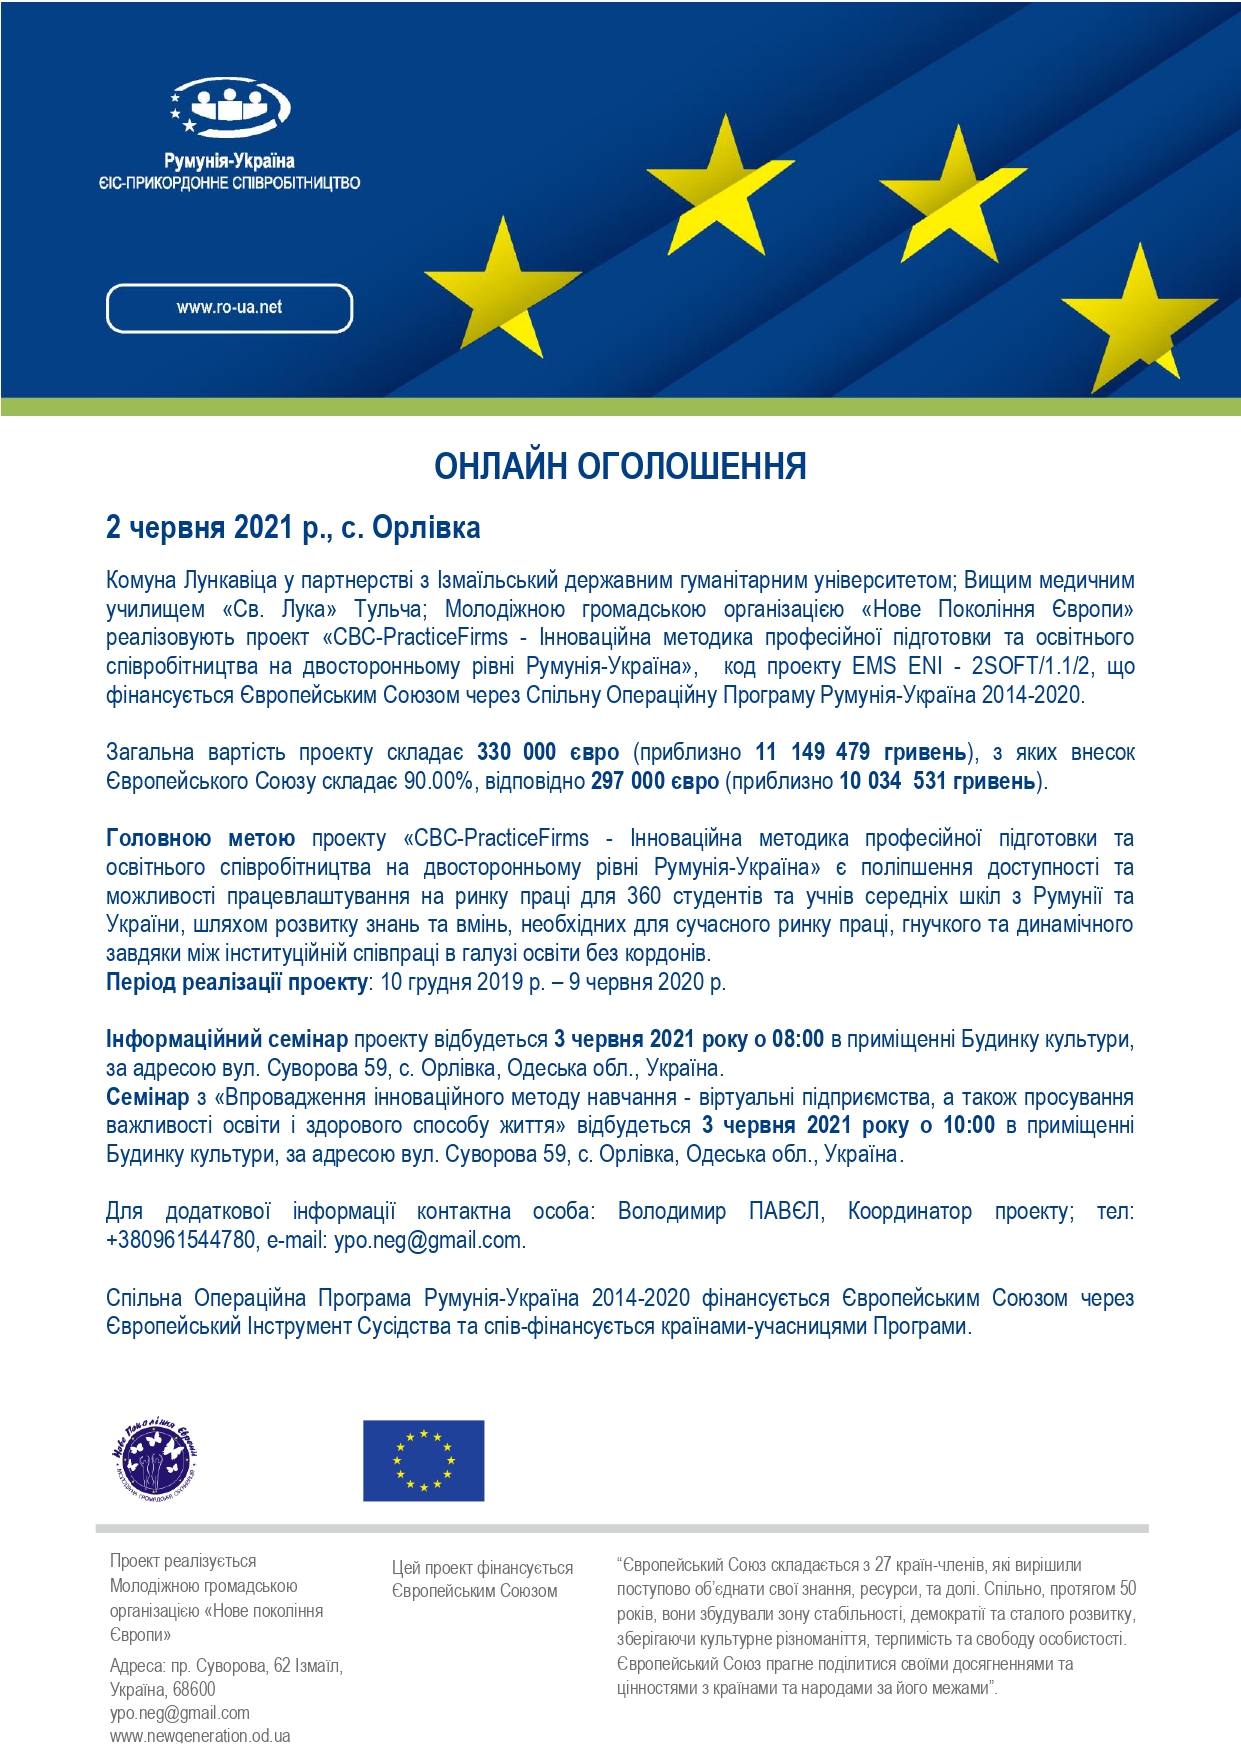 Румыния и Украина – в образовательном проекте ЕС «CBC-PracticeFirms» для профподготовки молодежи